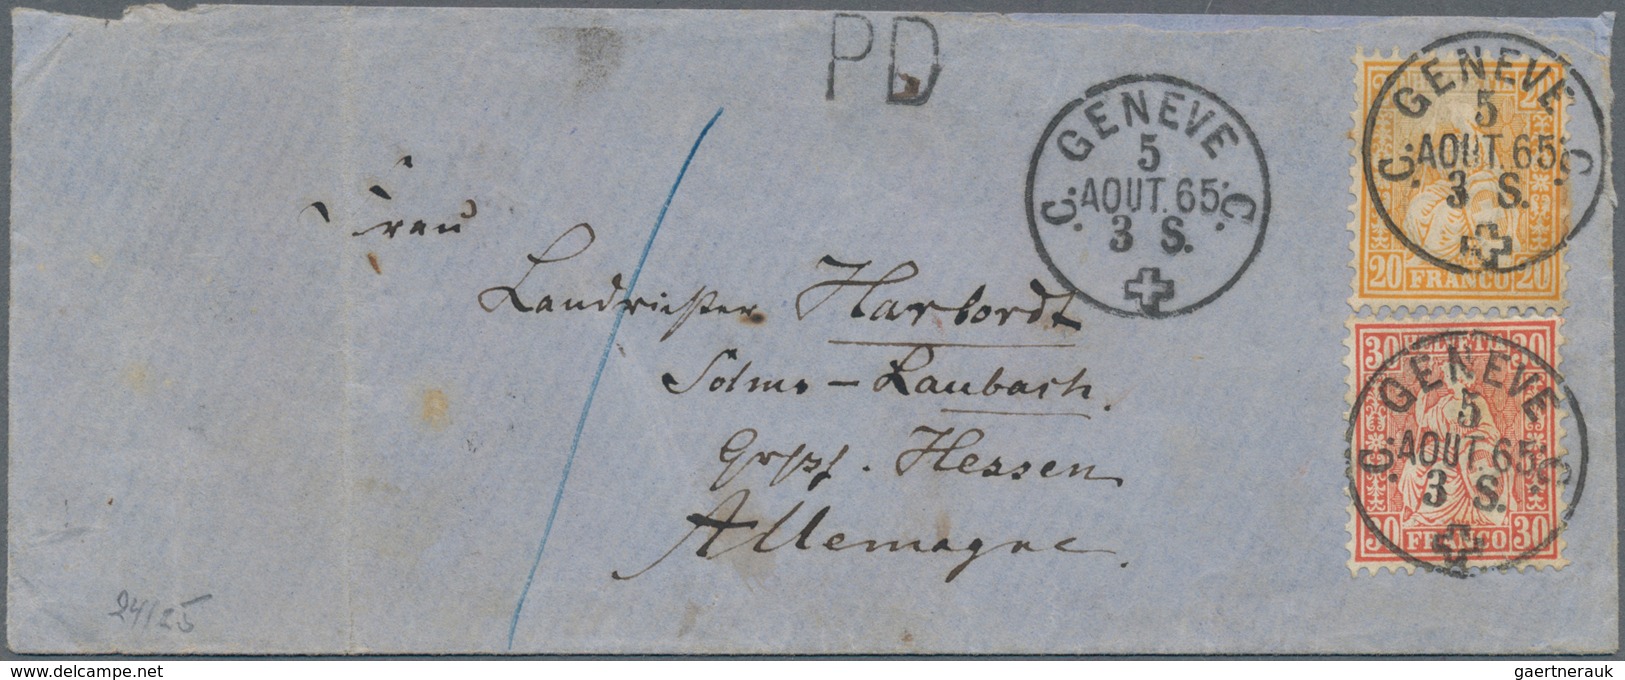 Schweiz: 1852/1900 (ca.), vielseitiger Posten von rund 150 Belegen ab Rayon mit Farbfrankatur, Paar